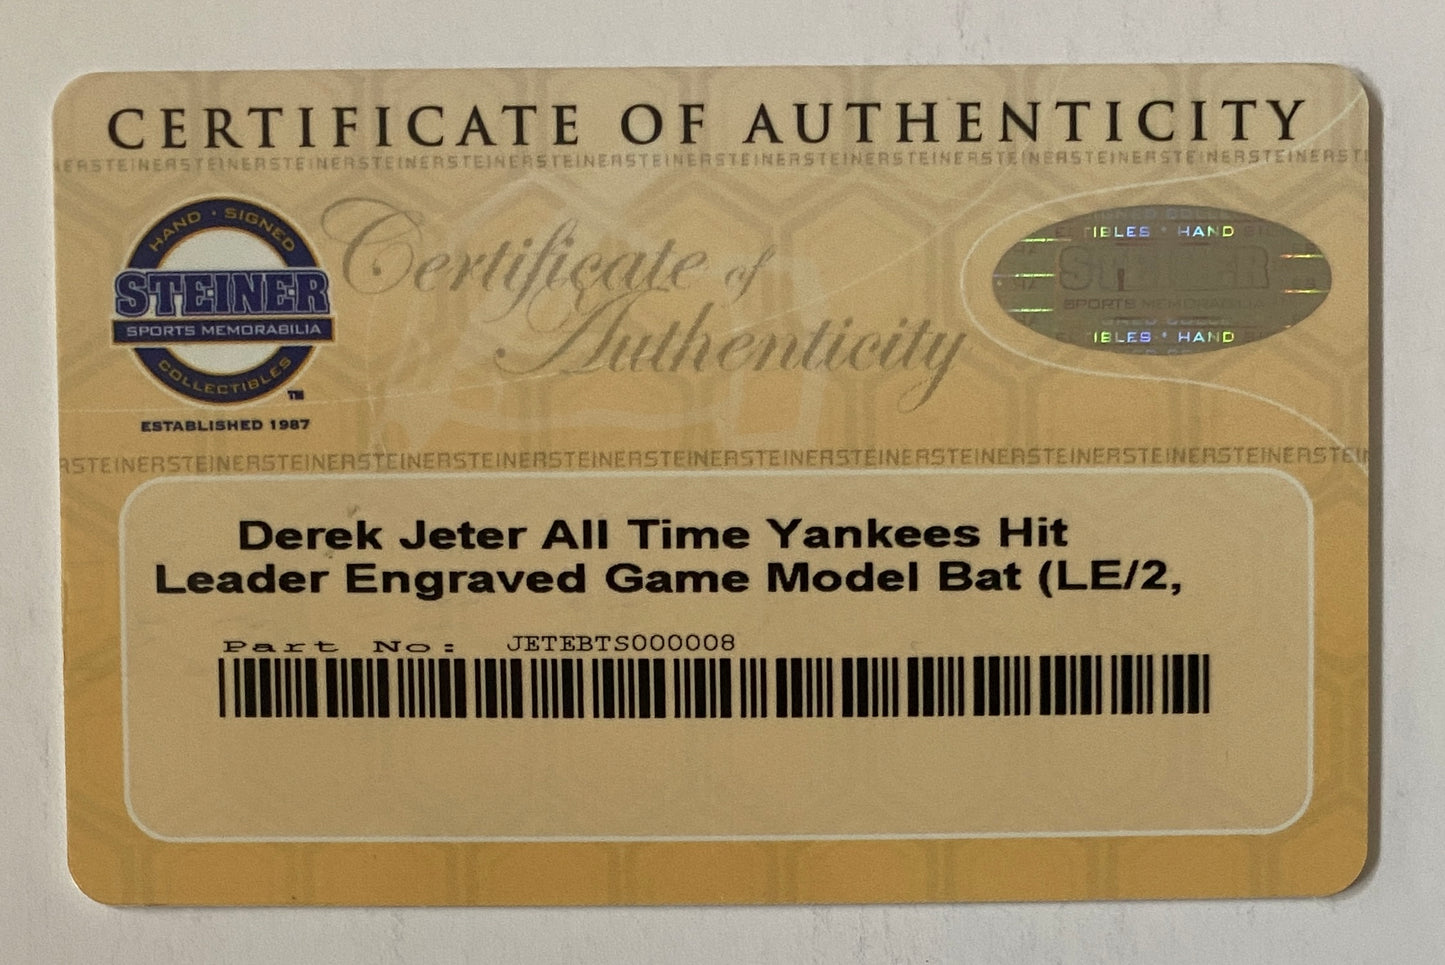 Derek Jeter Signed All Time Yankees Hit Leader Engraved Model Bat